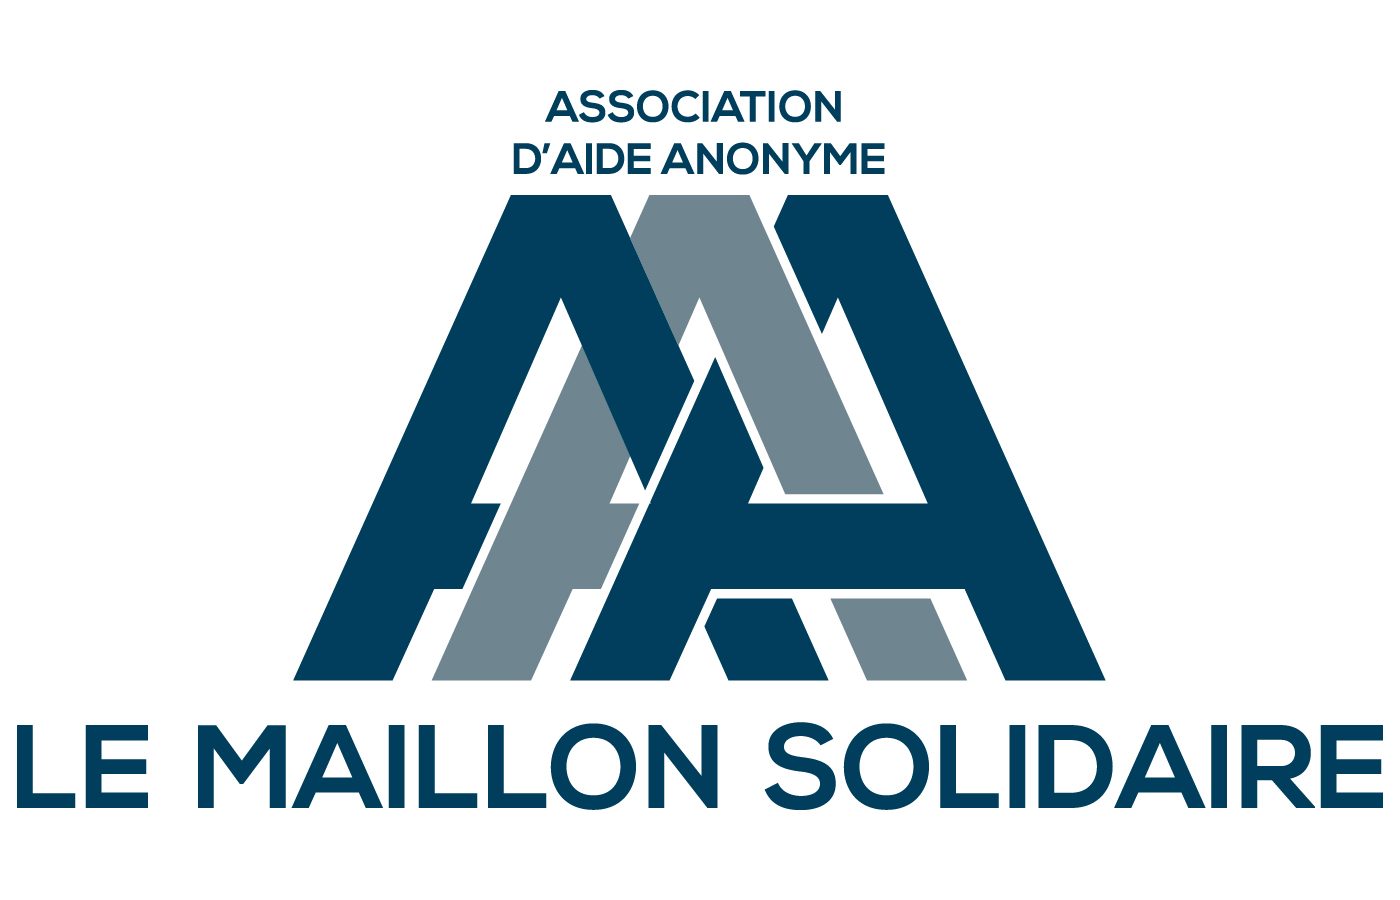 Le Maillon solidaire